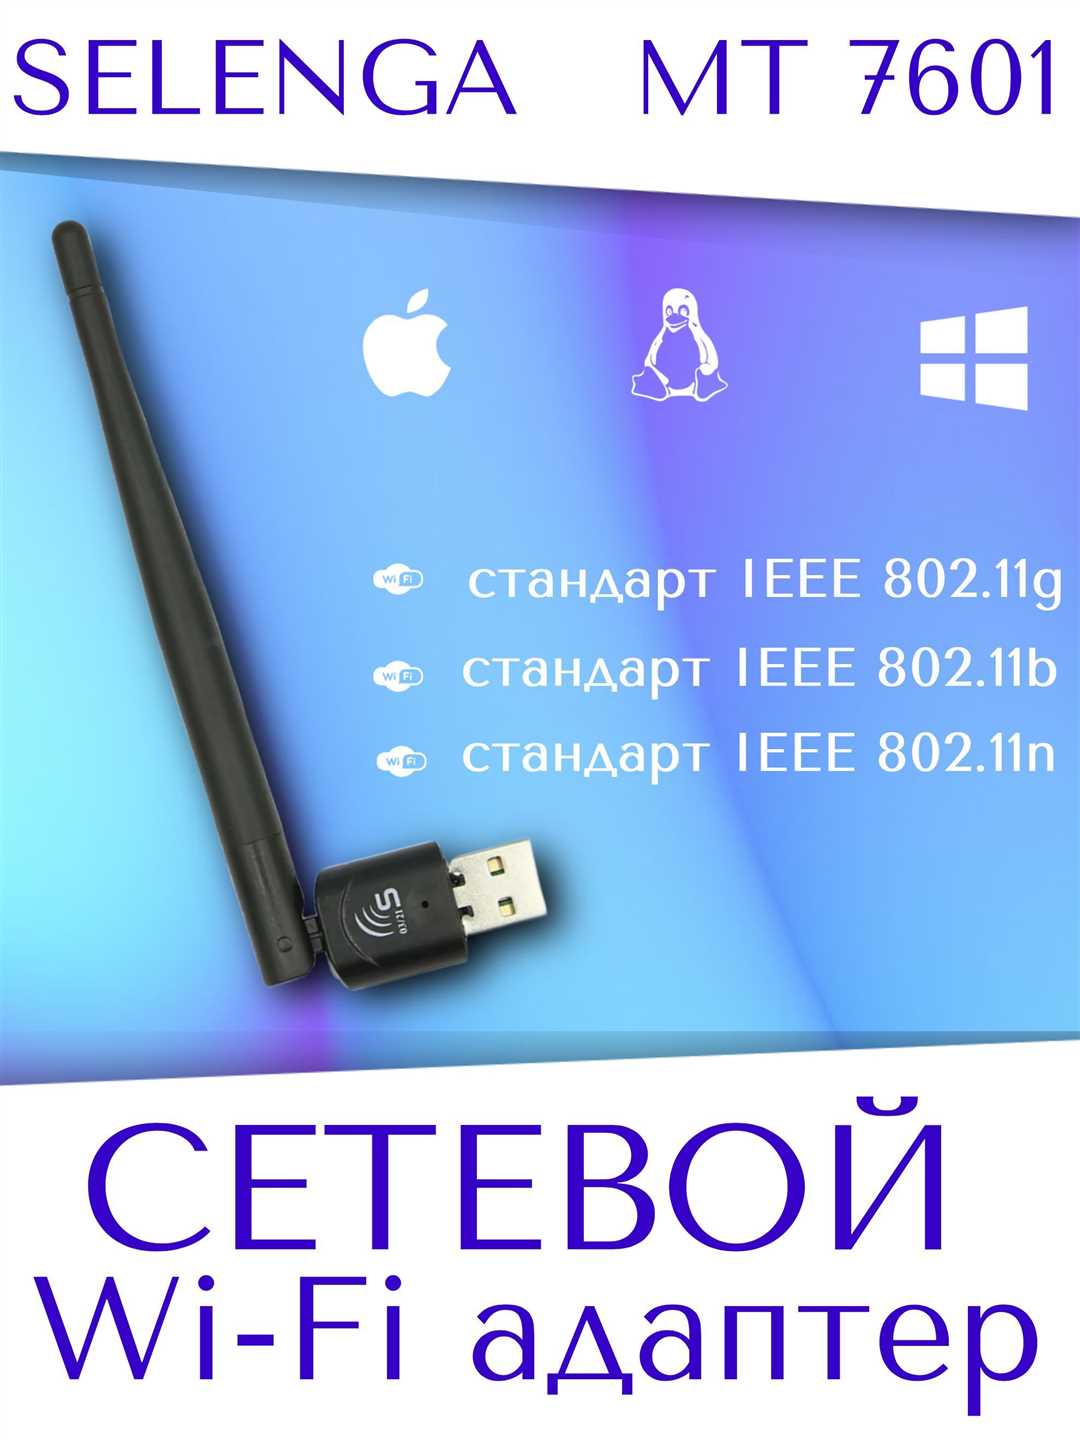 Комплектация Selenga USB 802.11 MT7601